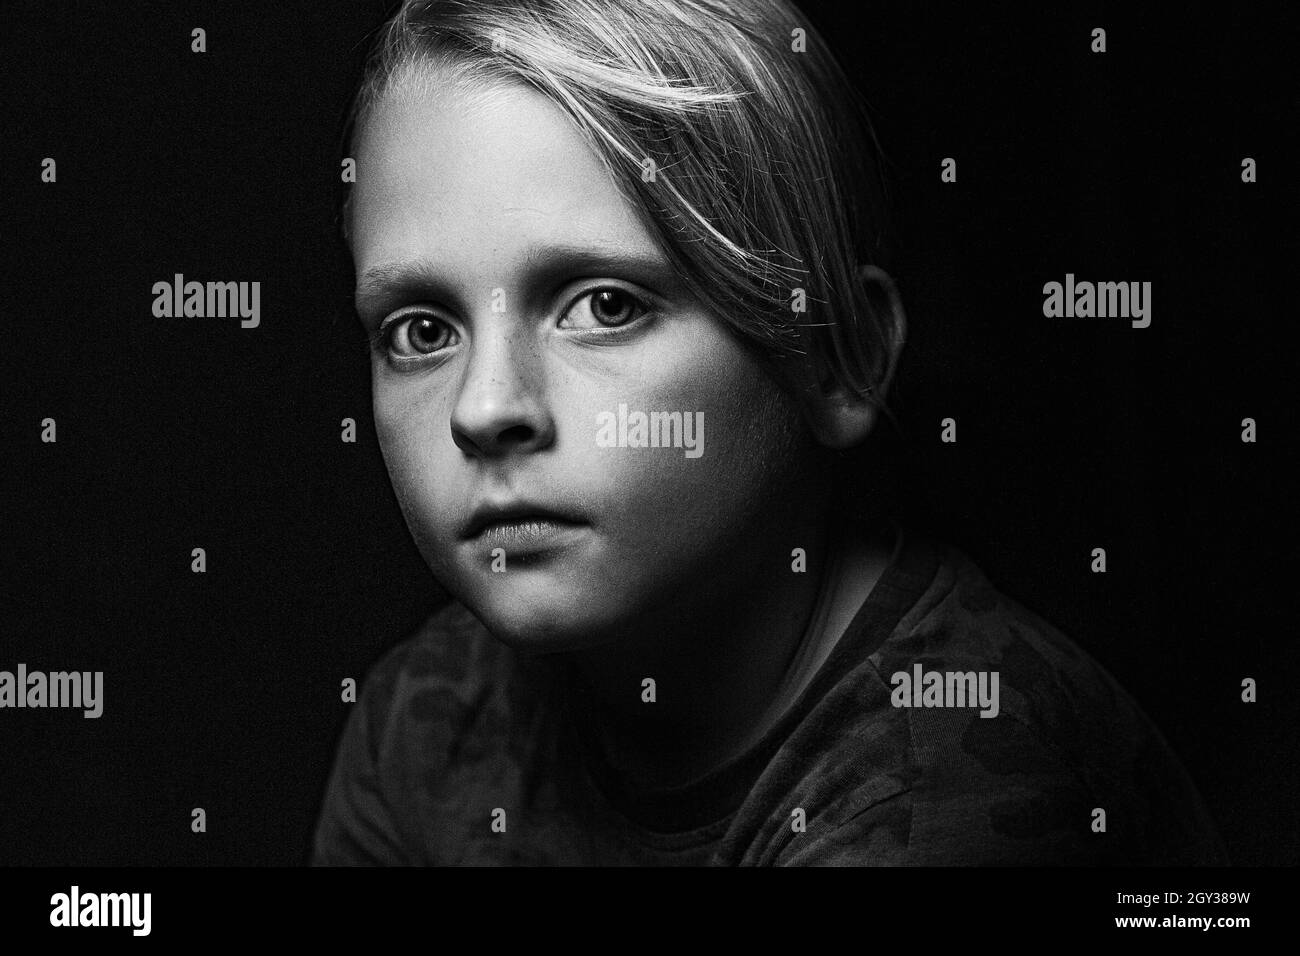 Scatto in scala di grigi di un ragazzo caucasico con grandi occhi profondi che guardano la fotocamera su uno sfondo nero Foto Stock